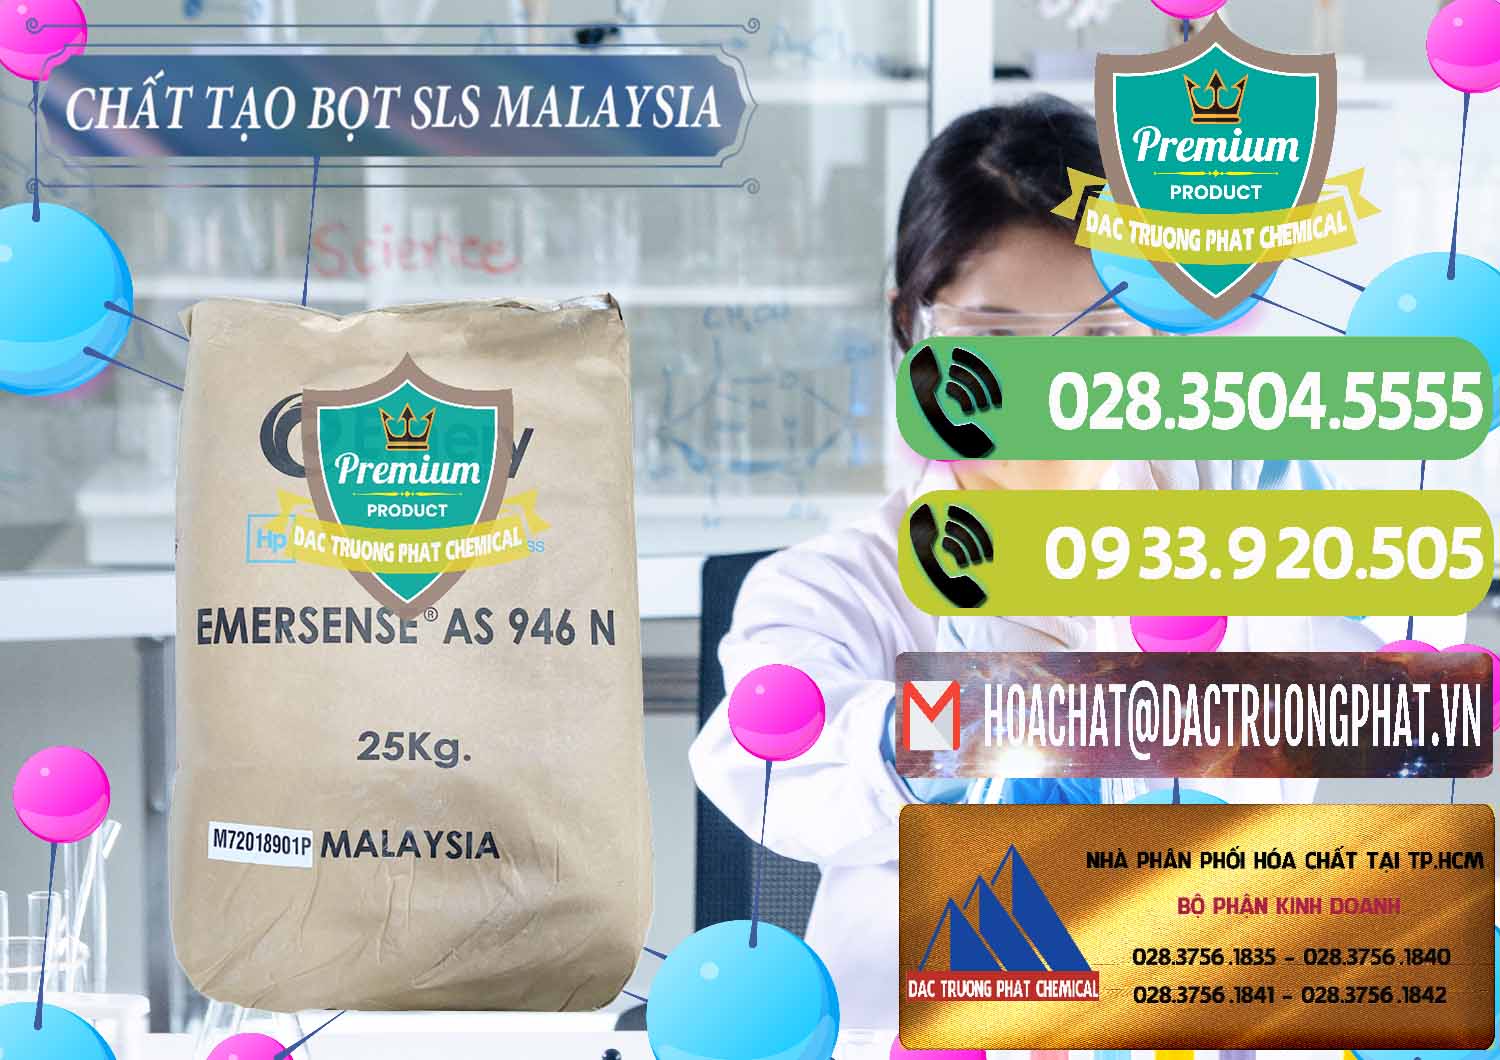 Nơi chuyên nhập khẩu & bán Chất Tạo Bọt SLS Emery - Emersense AS 946N Mã Lai Malaysia - 0423 - Đơn vị chuyên cung ứng ( phân phối ) hóa chất tại TP.HCM - hoachatmientay.vn